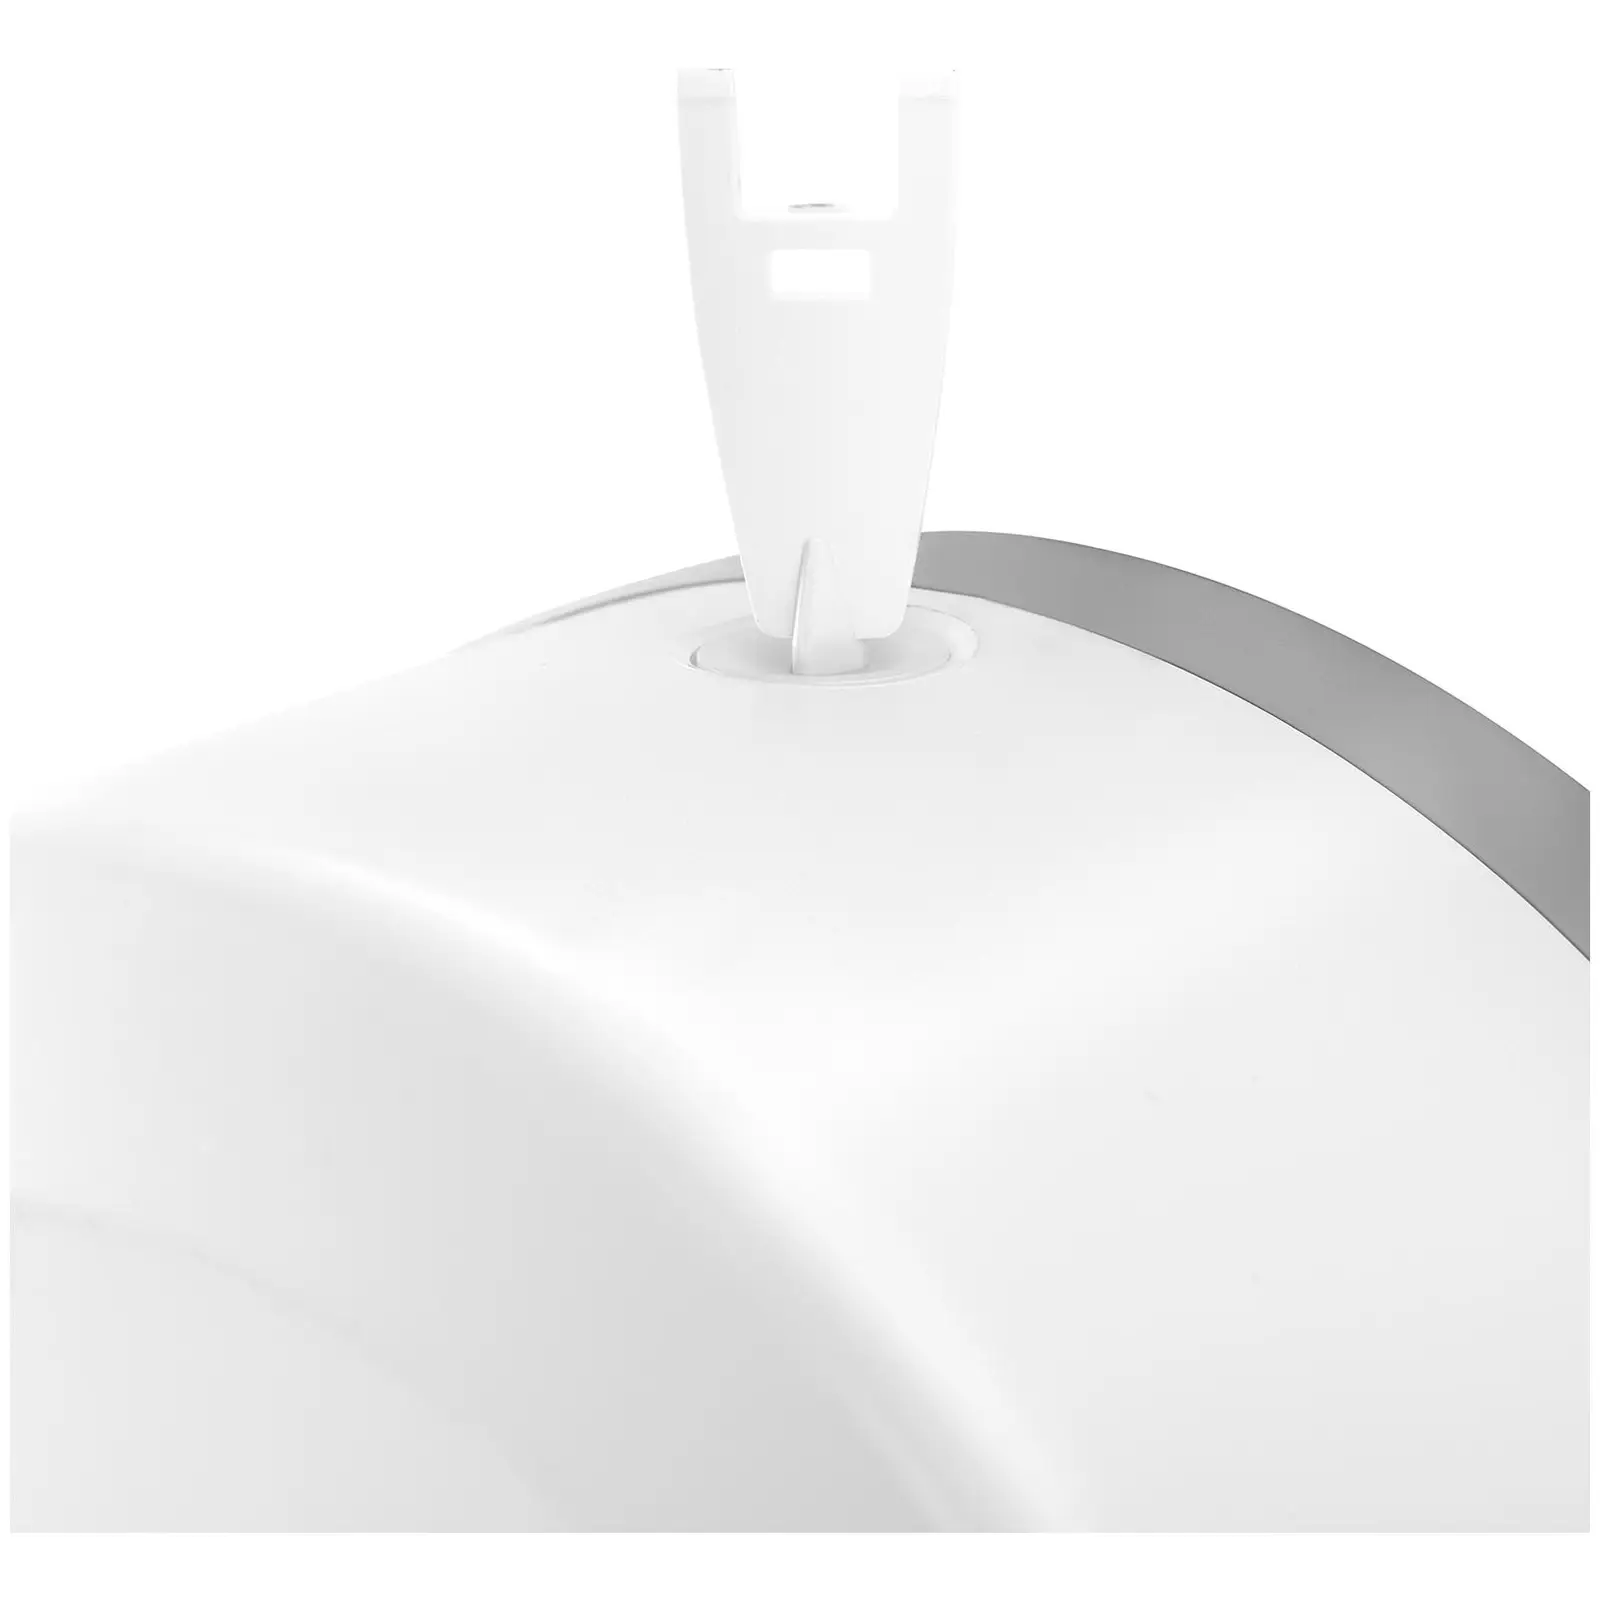 Derouleur papier wc - pour rouleaux Jumbo - ABS